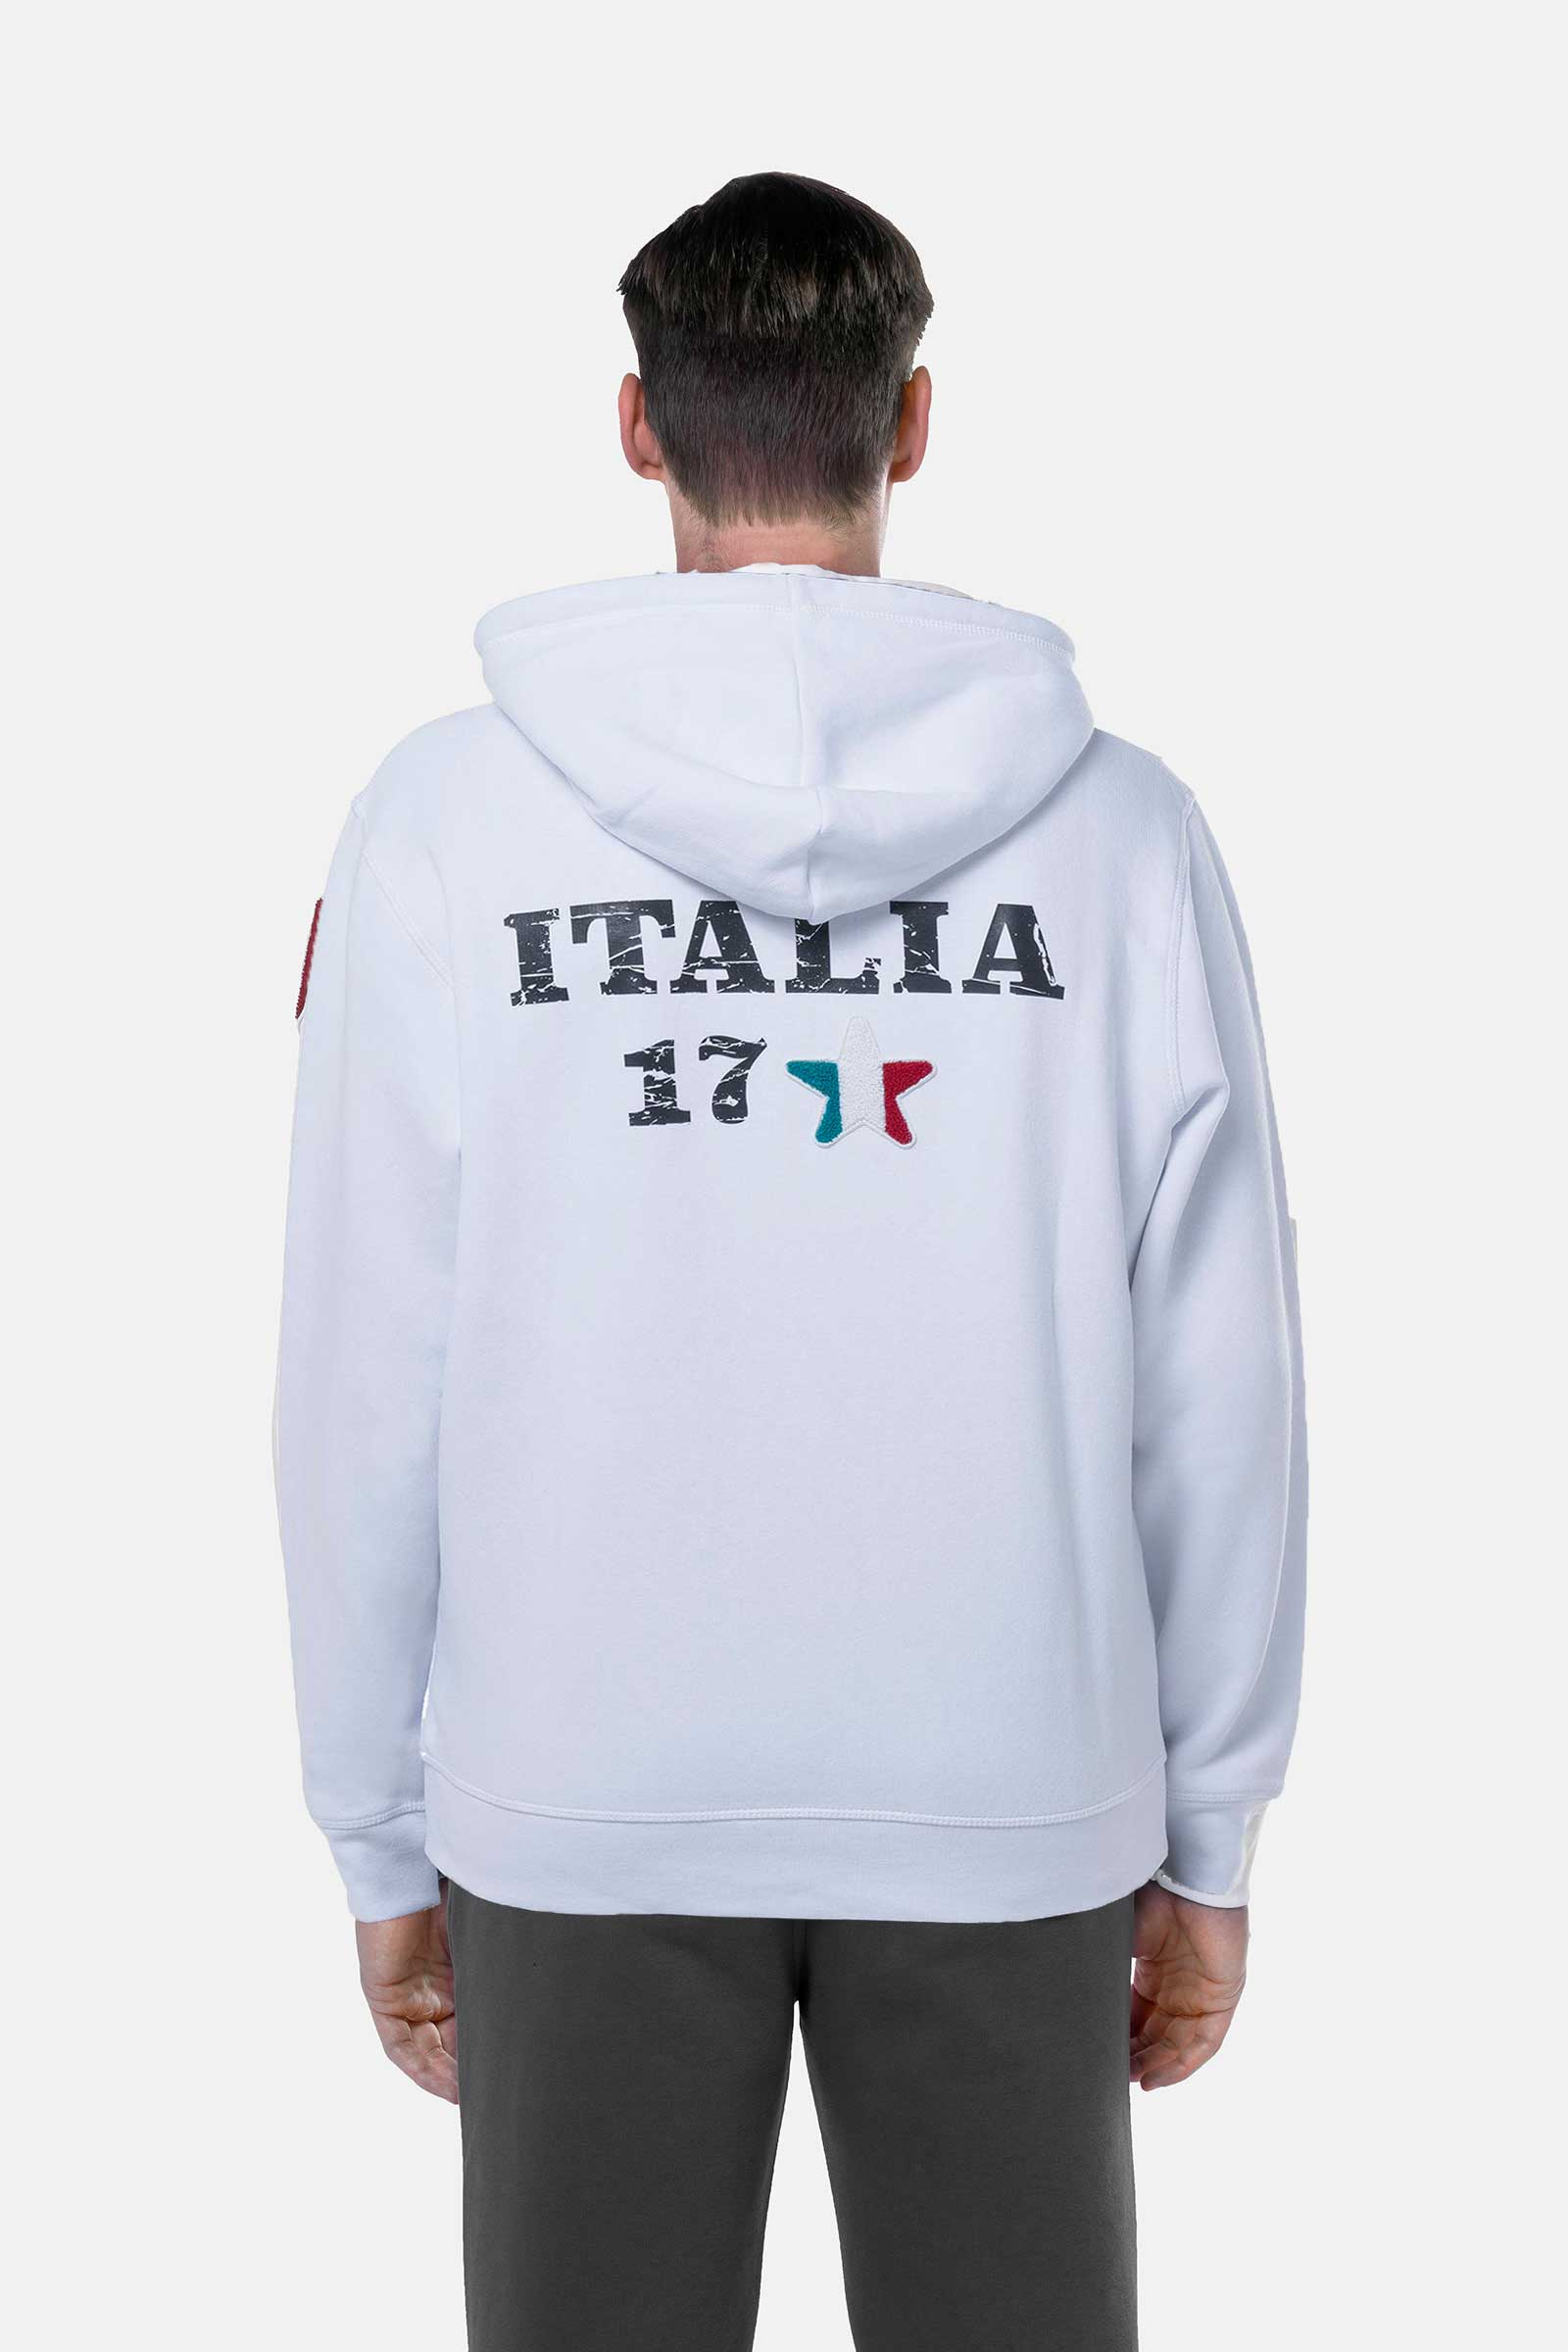 ITALIA 17 HOODIE - WHITE - Hydrogen - Luxury Sportwear